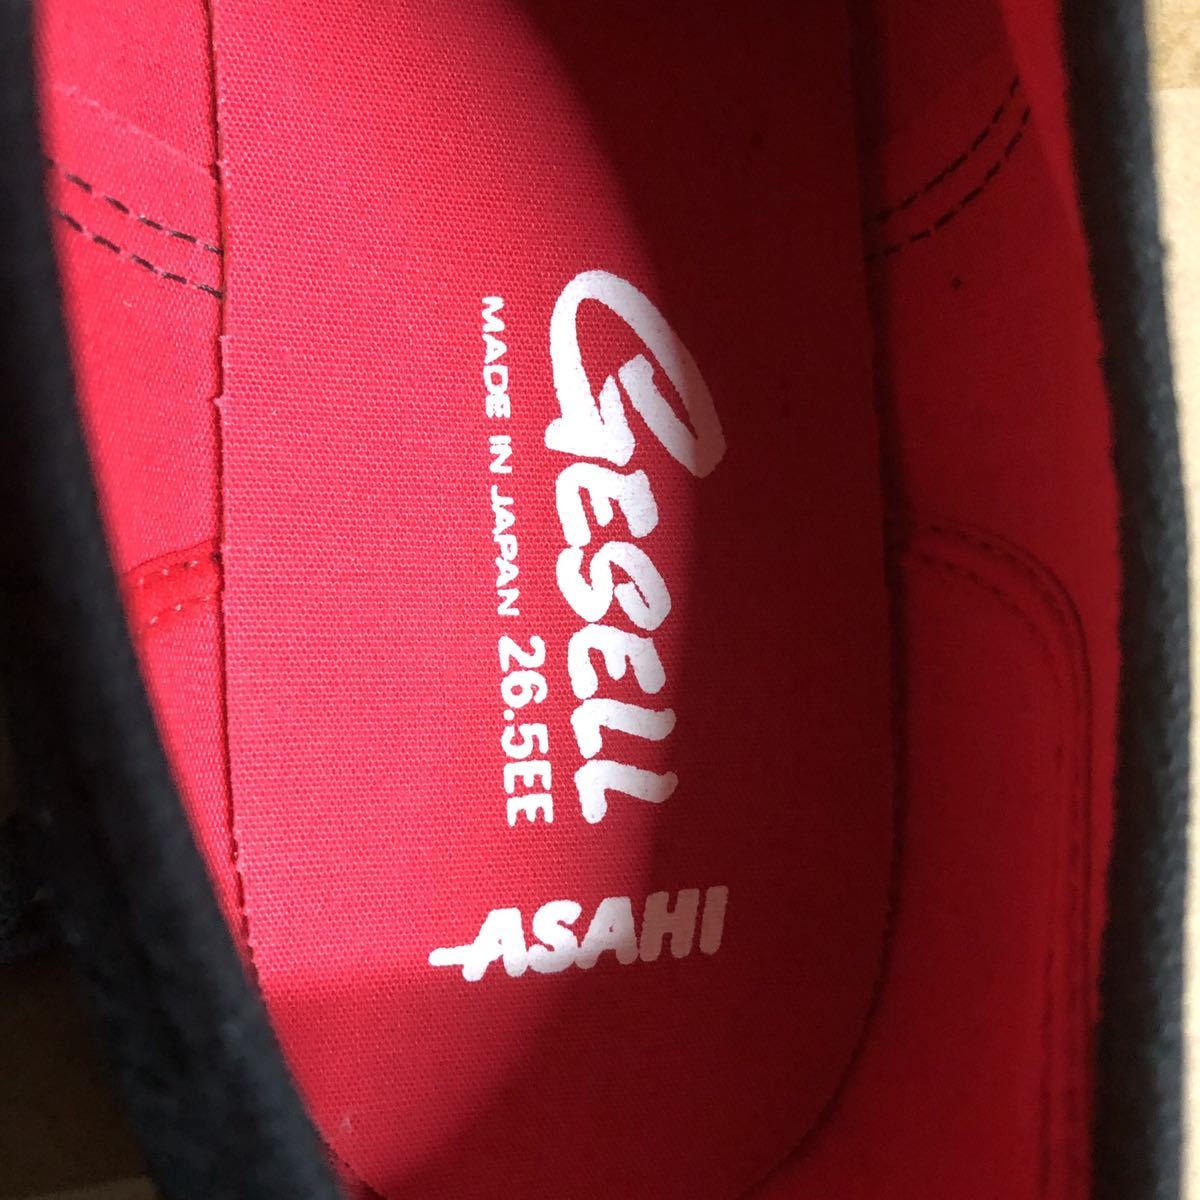  джентльмен обувь Asahi товар сделано в Японии солнечный ge-zeru009 черный 1 пара 2200 иен. товар .2 пара .3000 иен .25cm